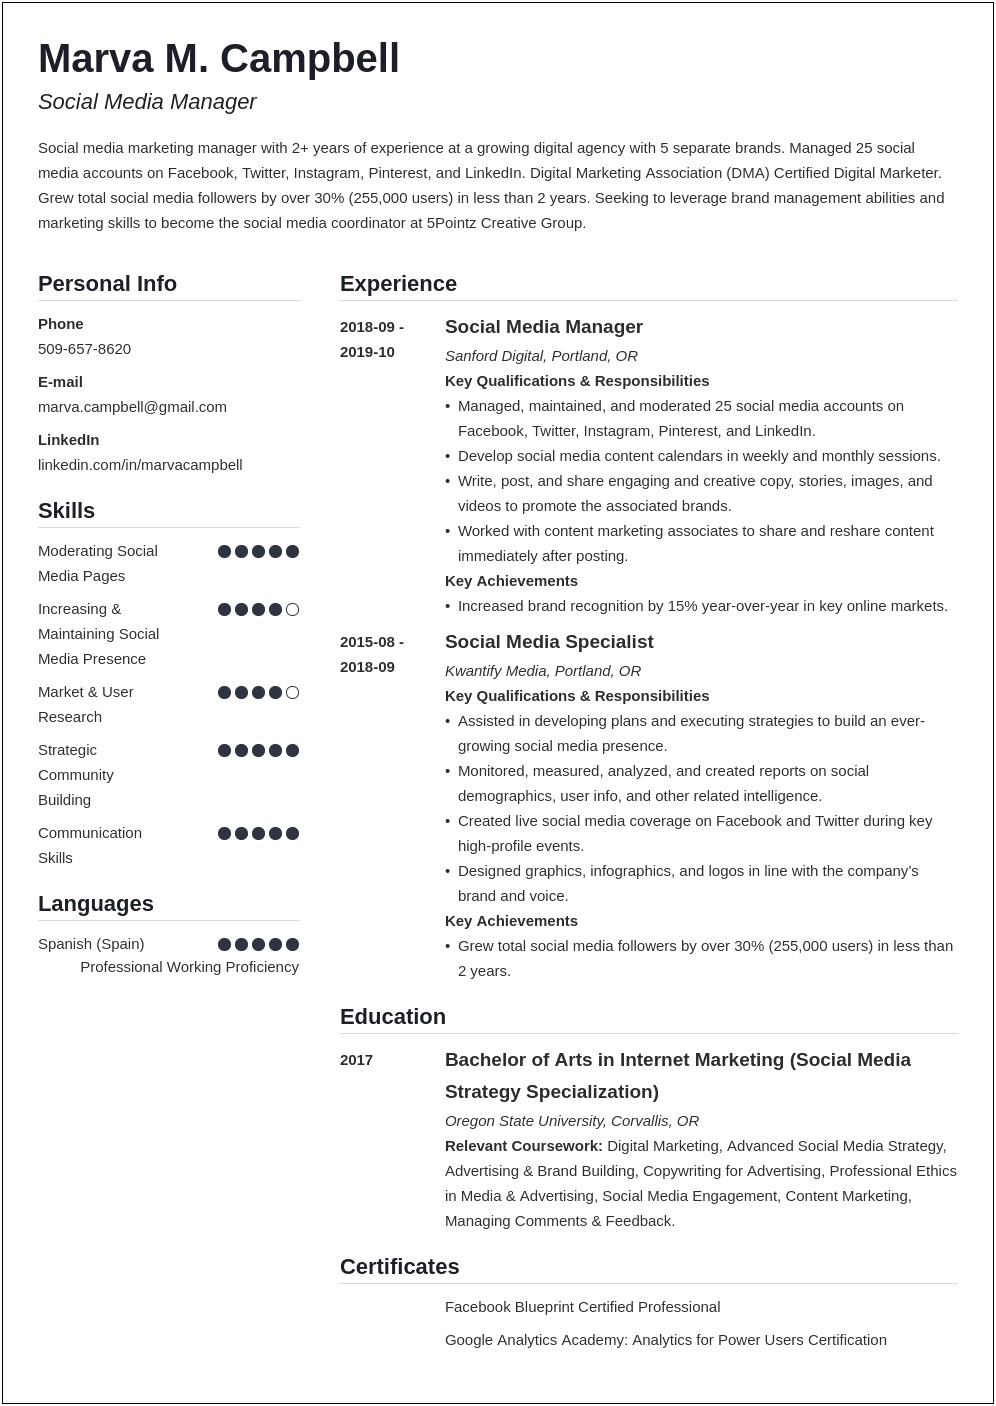 Resume Summary Of Qualifications Social Media